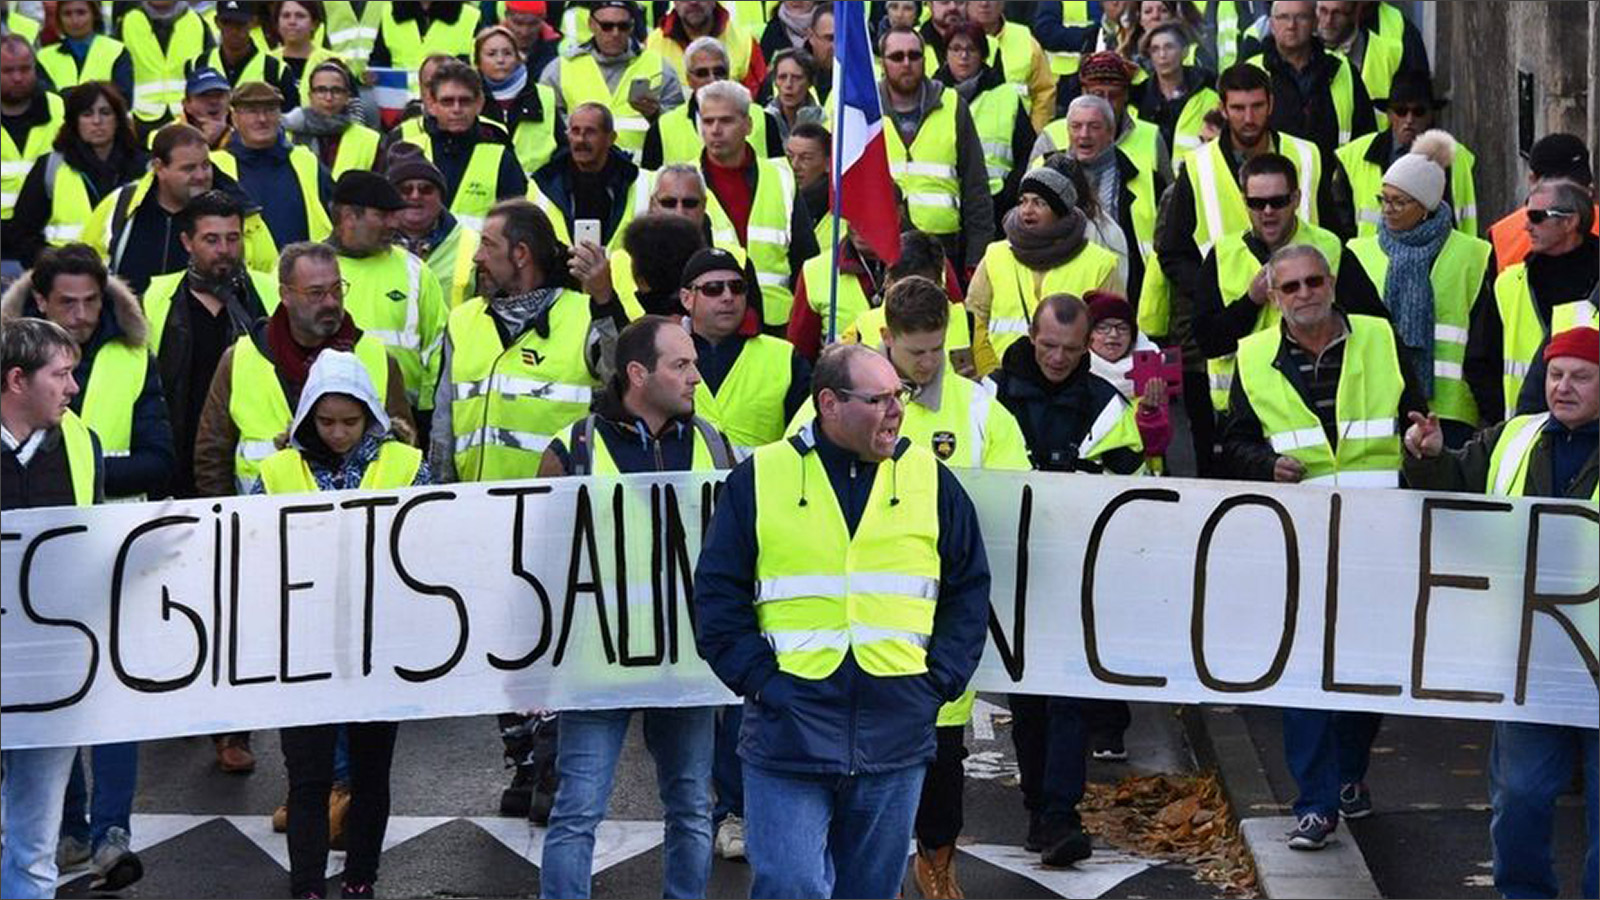 بدأت حركة الاحتجاجات في فرنسا المعروفة بالسترات الصفراء تظهر منها نسخ في أوروبا، من بلجيكا إلى هولندا إلى بلغاريا مرورًا بألمانيا مع مراعاة الخصوصية في كل بلد